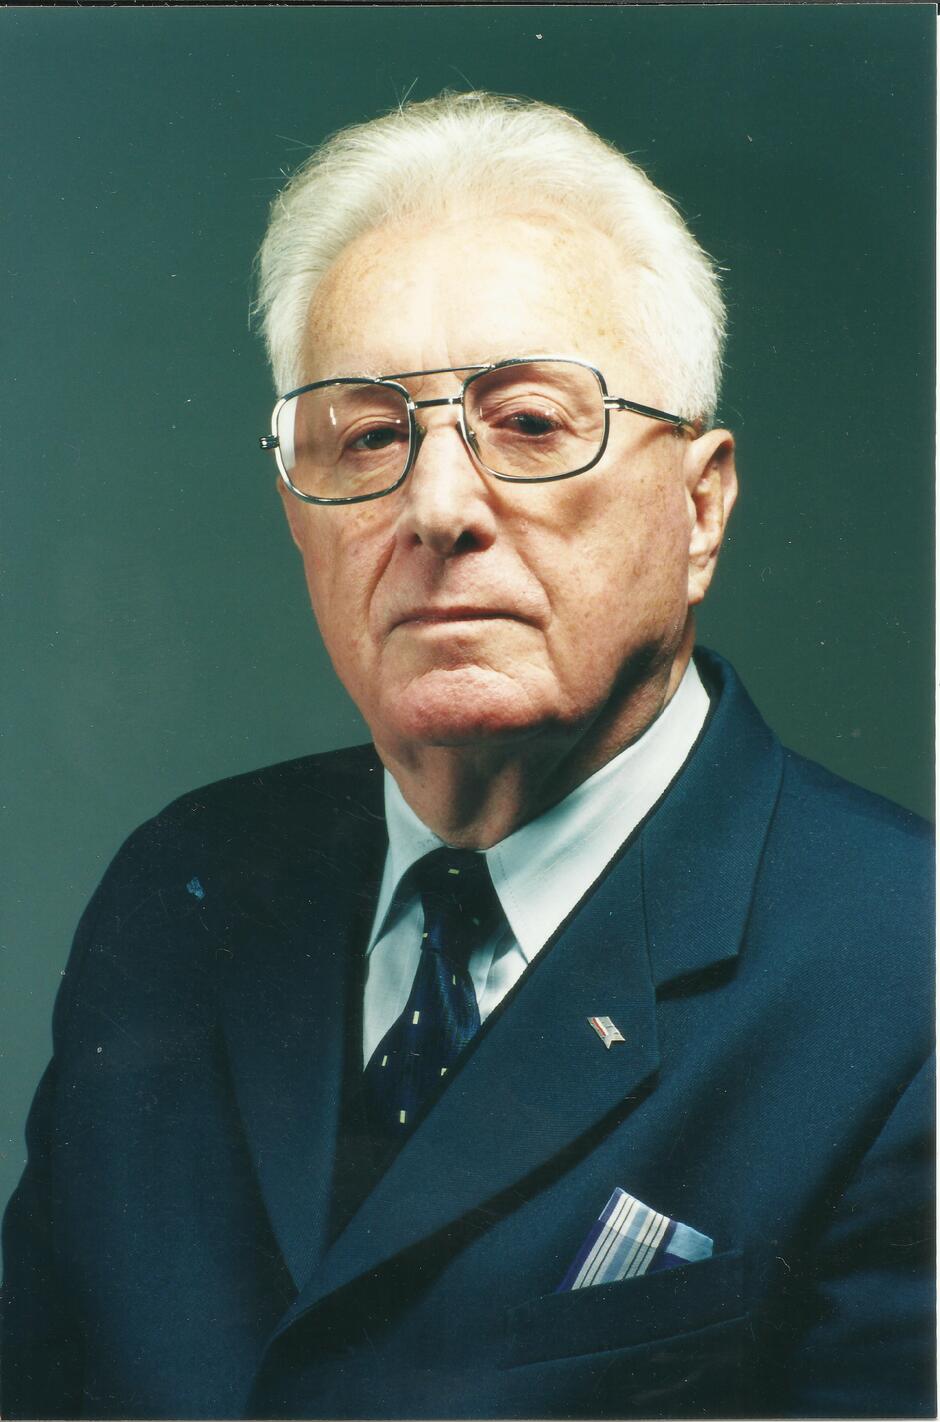 Prof. Eustachy Burka był żołnierzem Armii Krajowej. Po wojnie zajął się pracą naukową, był m.in. członkiem Polskiej Akademii Nauk